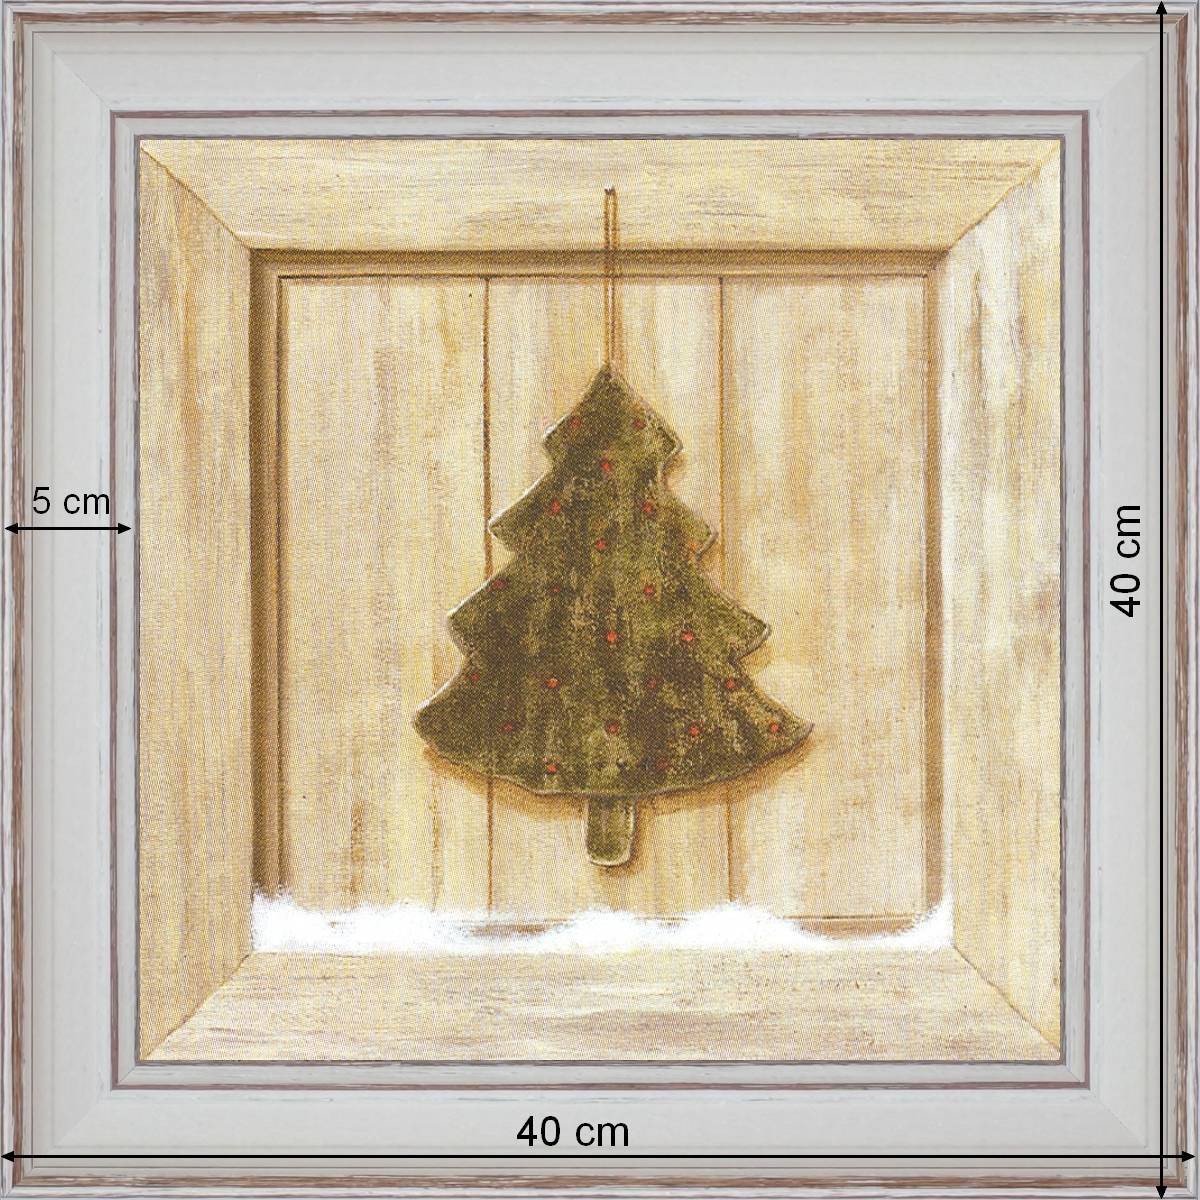 Fir tree - dimensions 40 x 40 cm - White